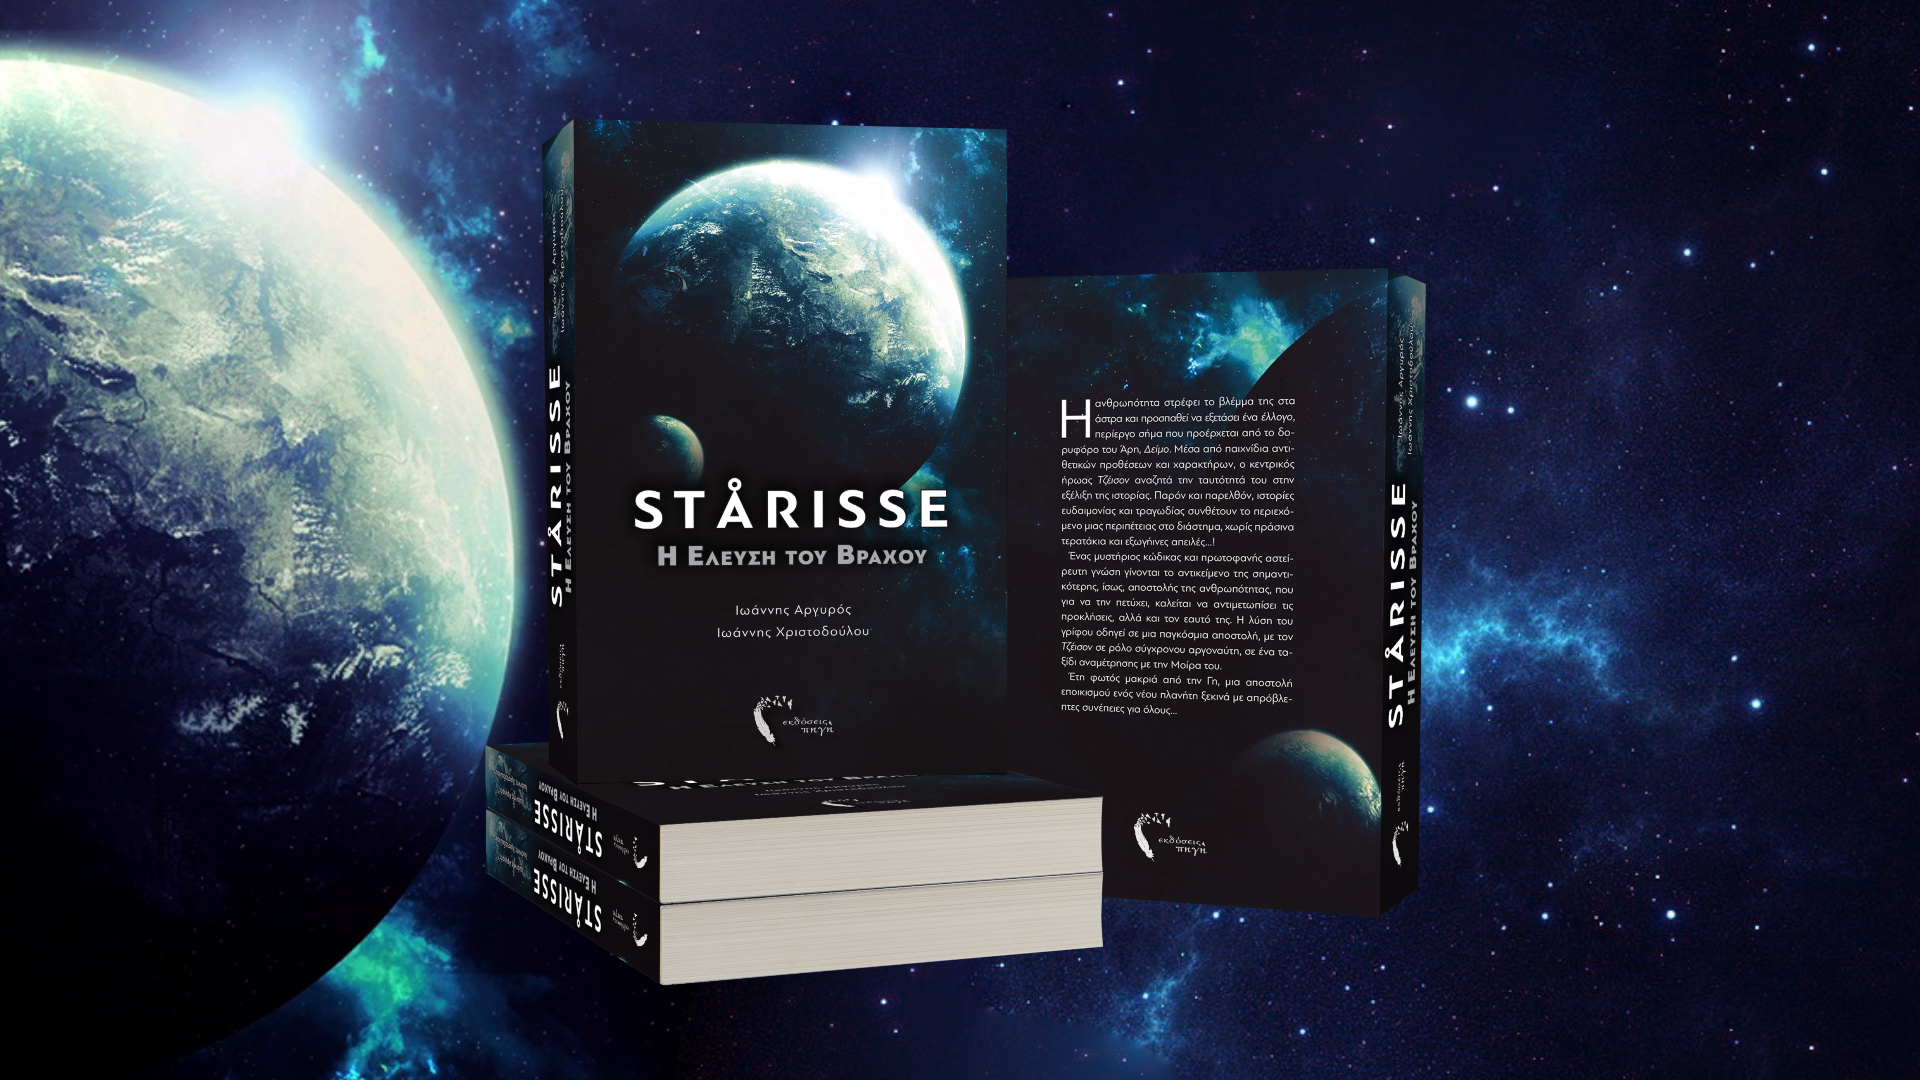 STARISSE εκδόσεις ΠΗΓΗ 2016